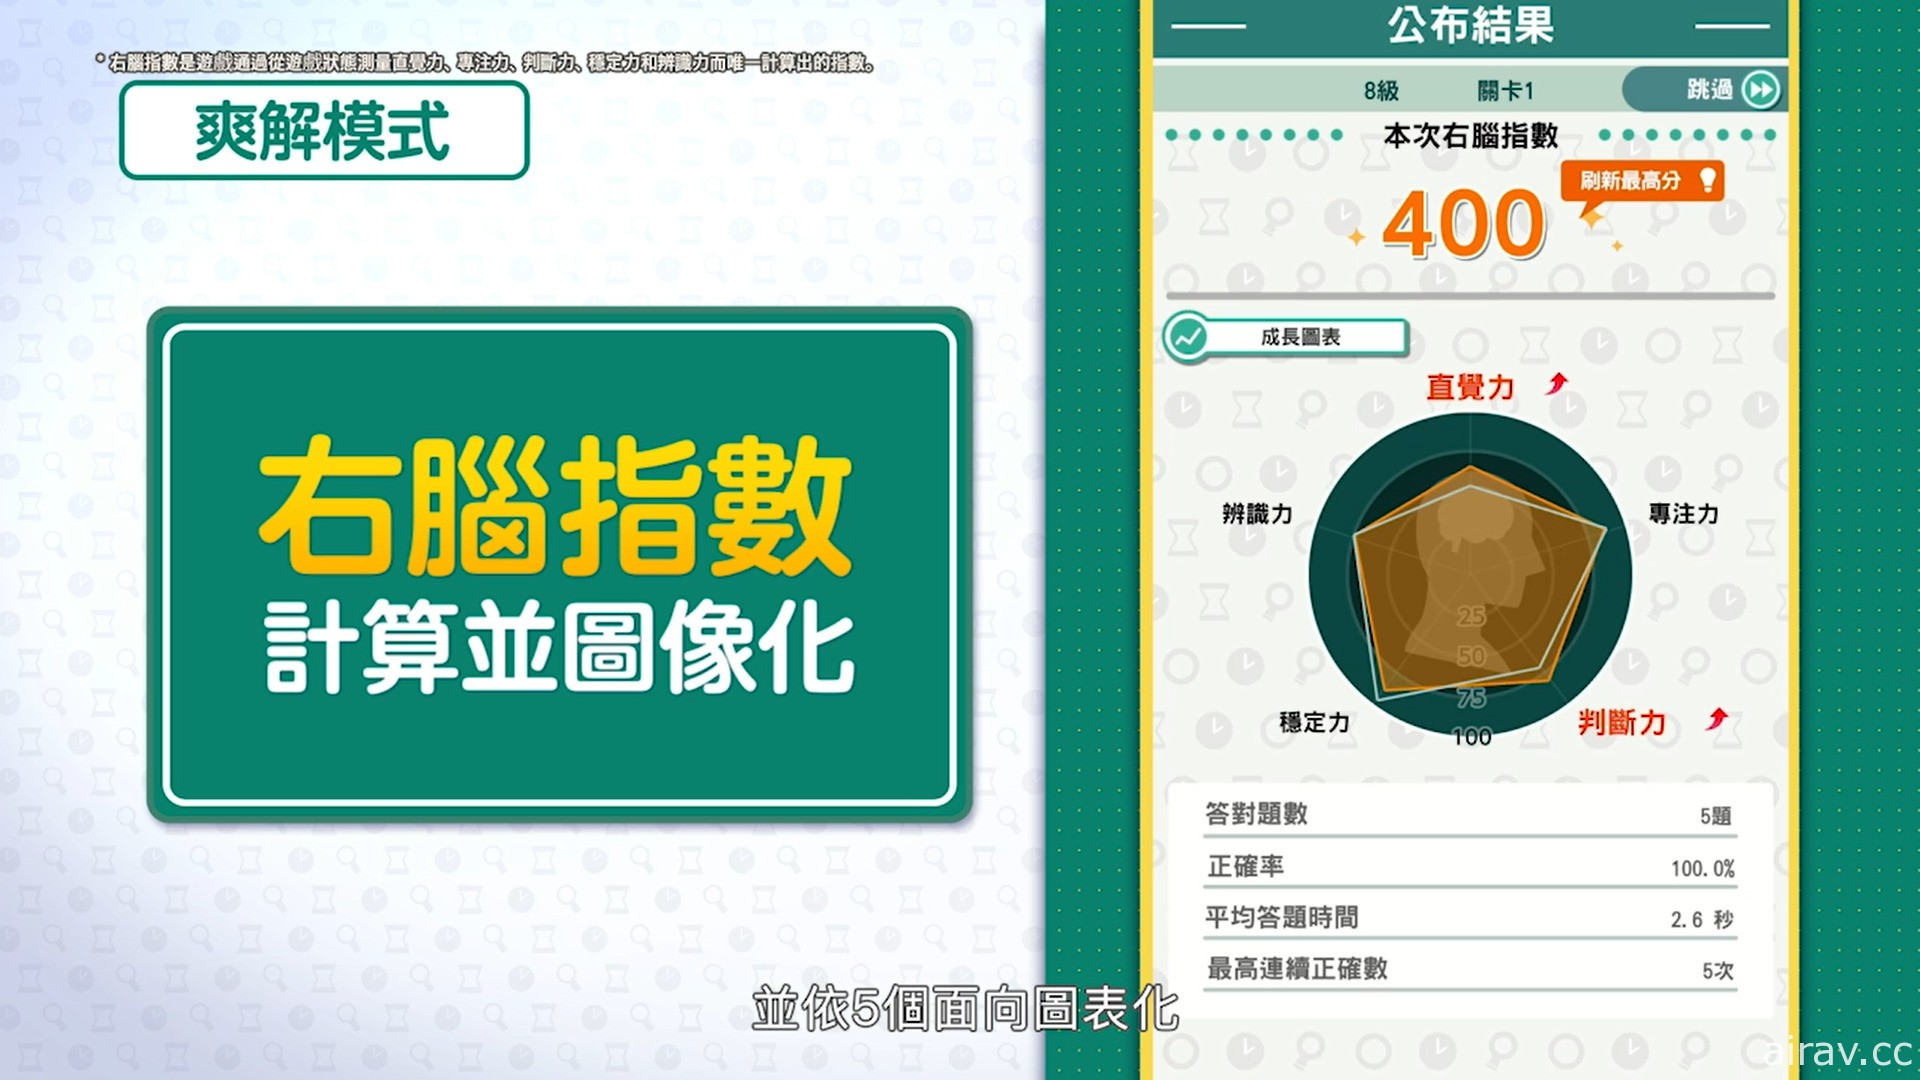 《-右腦達人- 找錯糾察隊 for Nintendo Switch》中文數位版 11 月 25 日發售